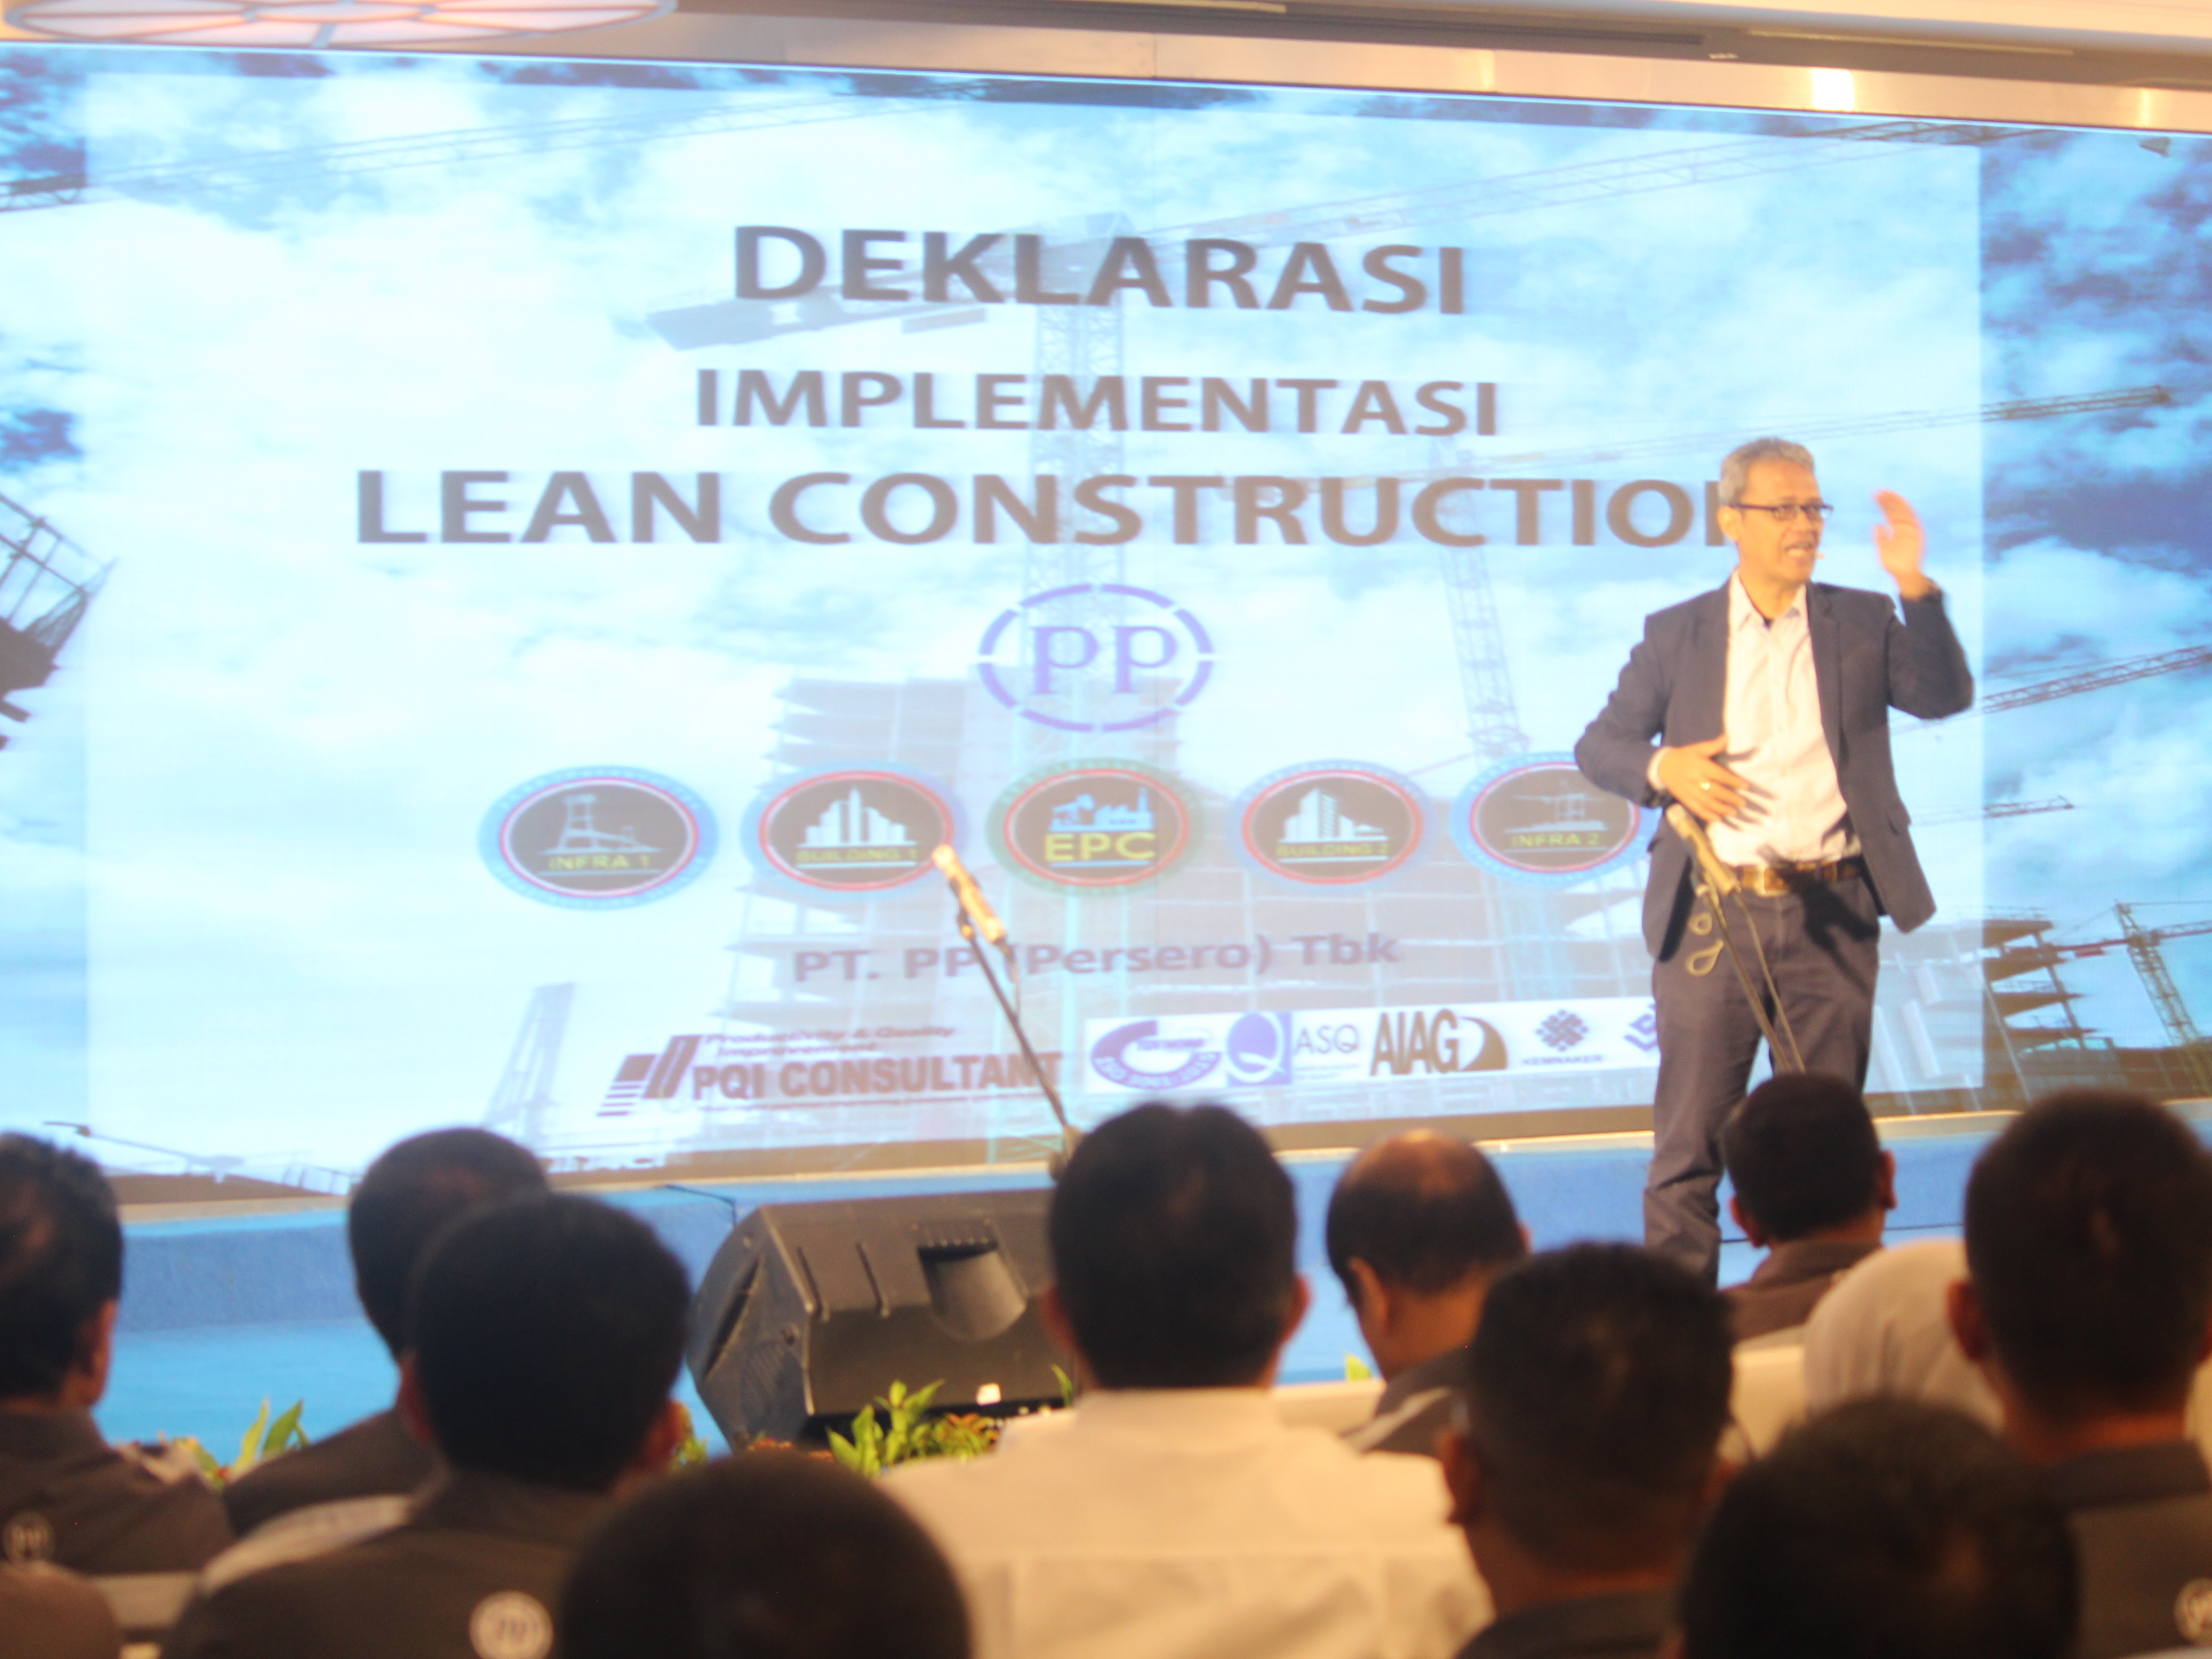 Budi Utomo speaker on Deklarasi dan Implementasi Lean Construction PT. PP